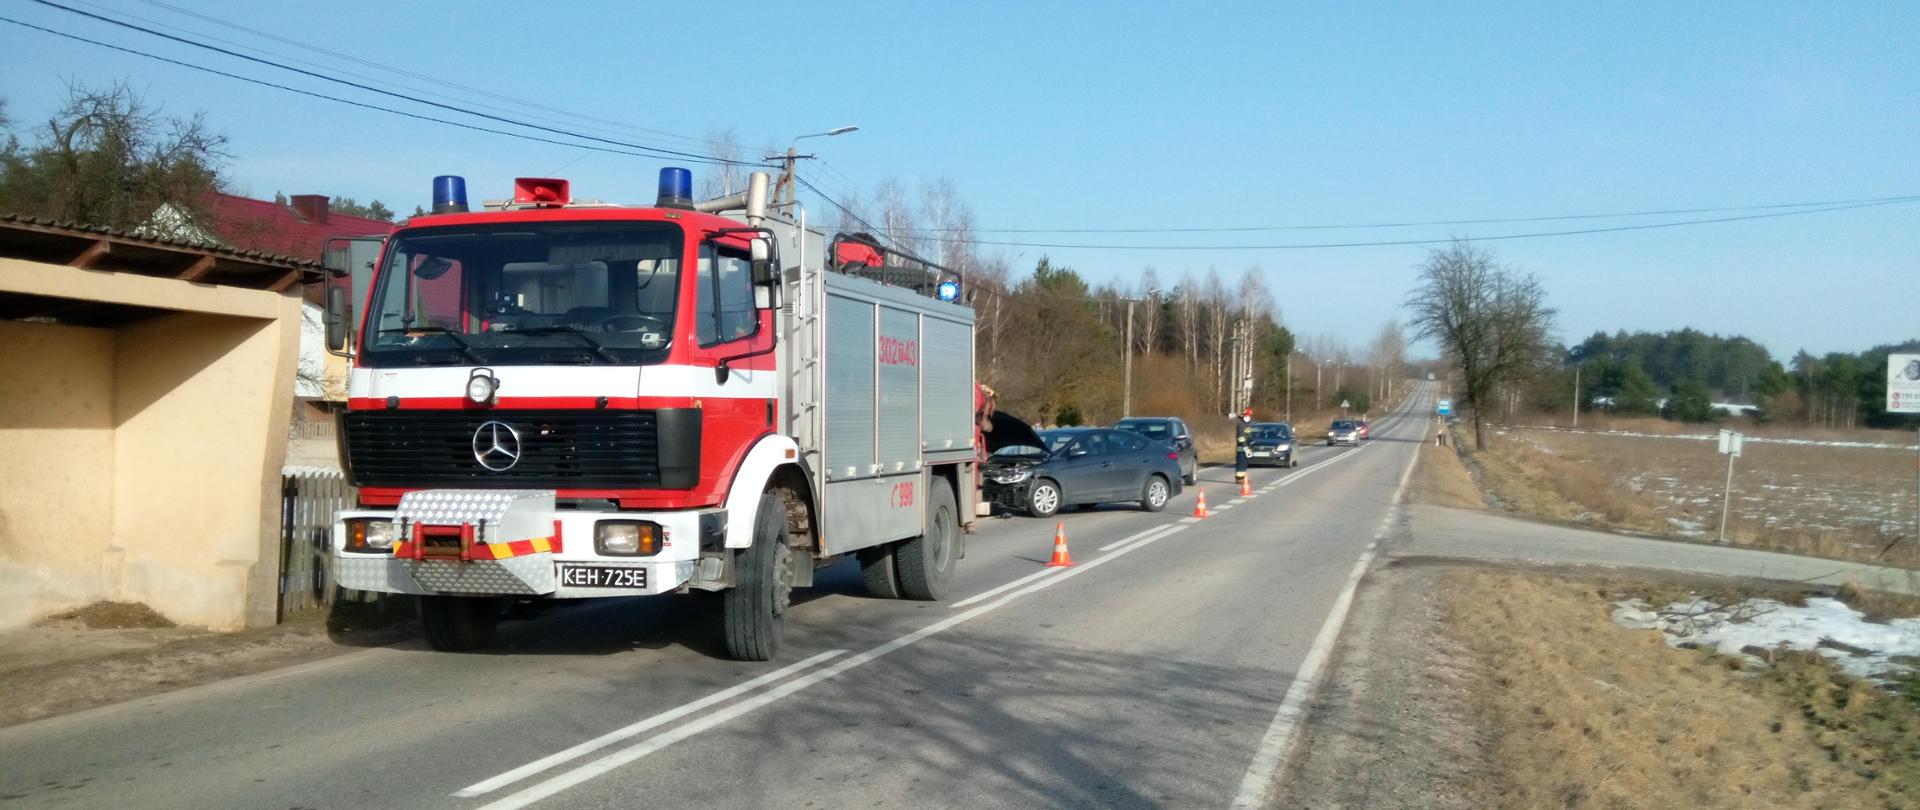 Zdjęcie przedstawia miejsce zdarzenia: Droga Wojewódzka nr 748 wraz z samochodami przybyłych służb oraz uszkodzony samochód Hyundai Elanta biorący udział w zdarzeniu. 